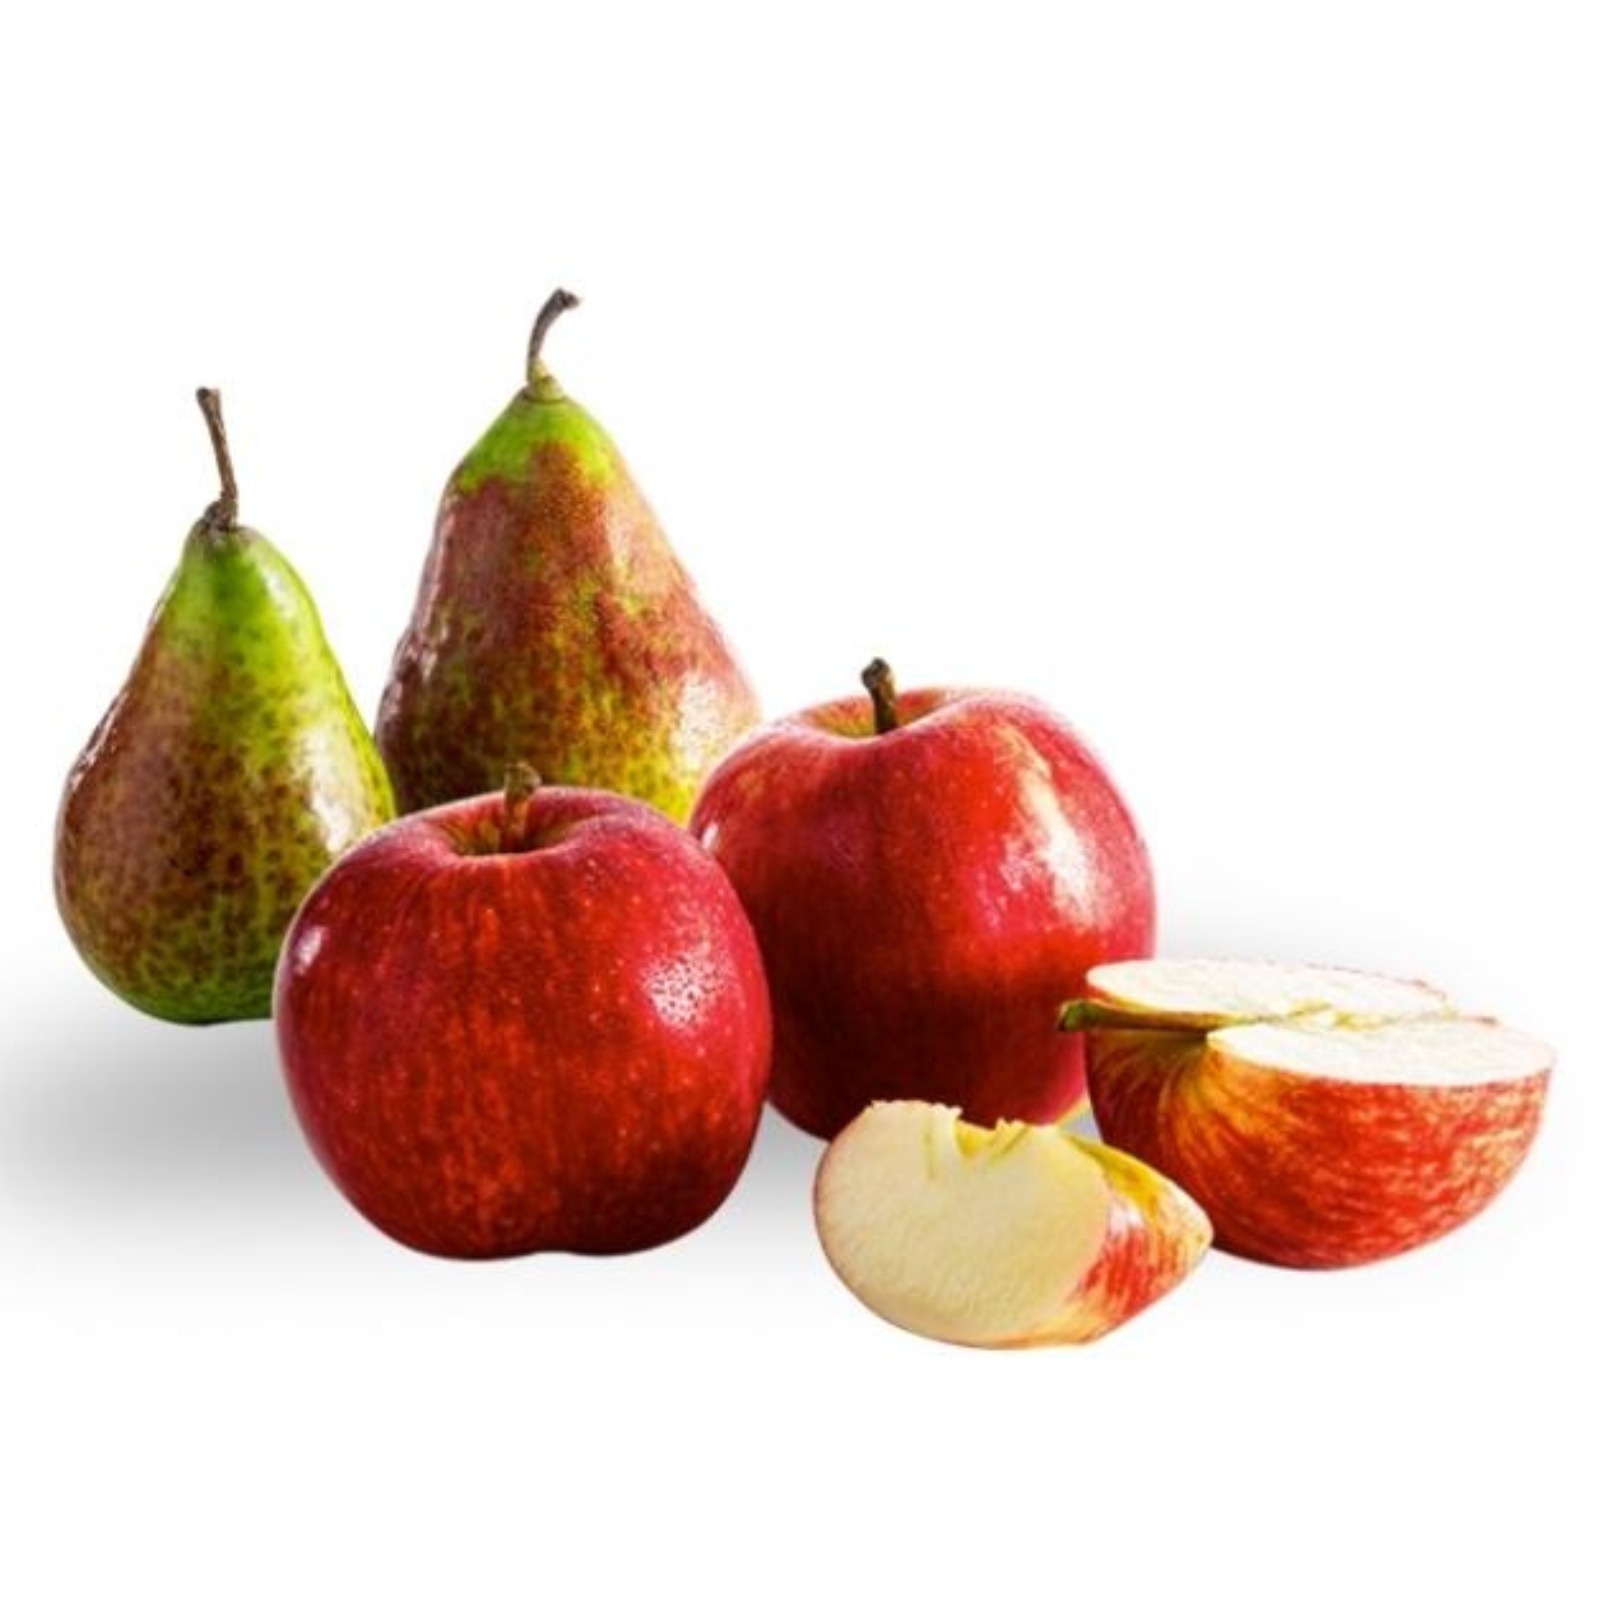 Buy Apple Pear Online NZ